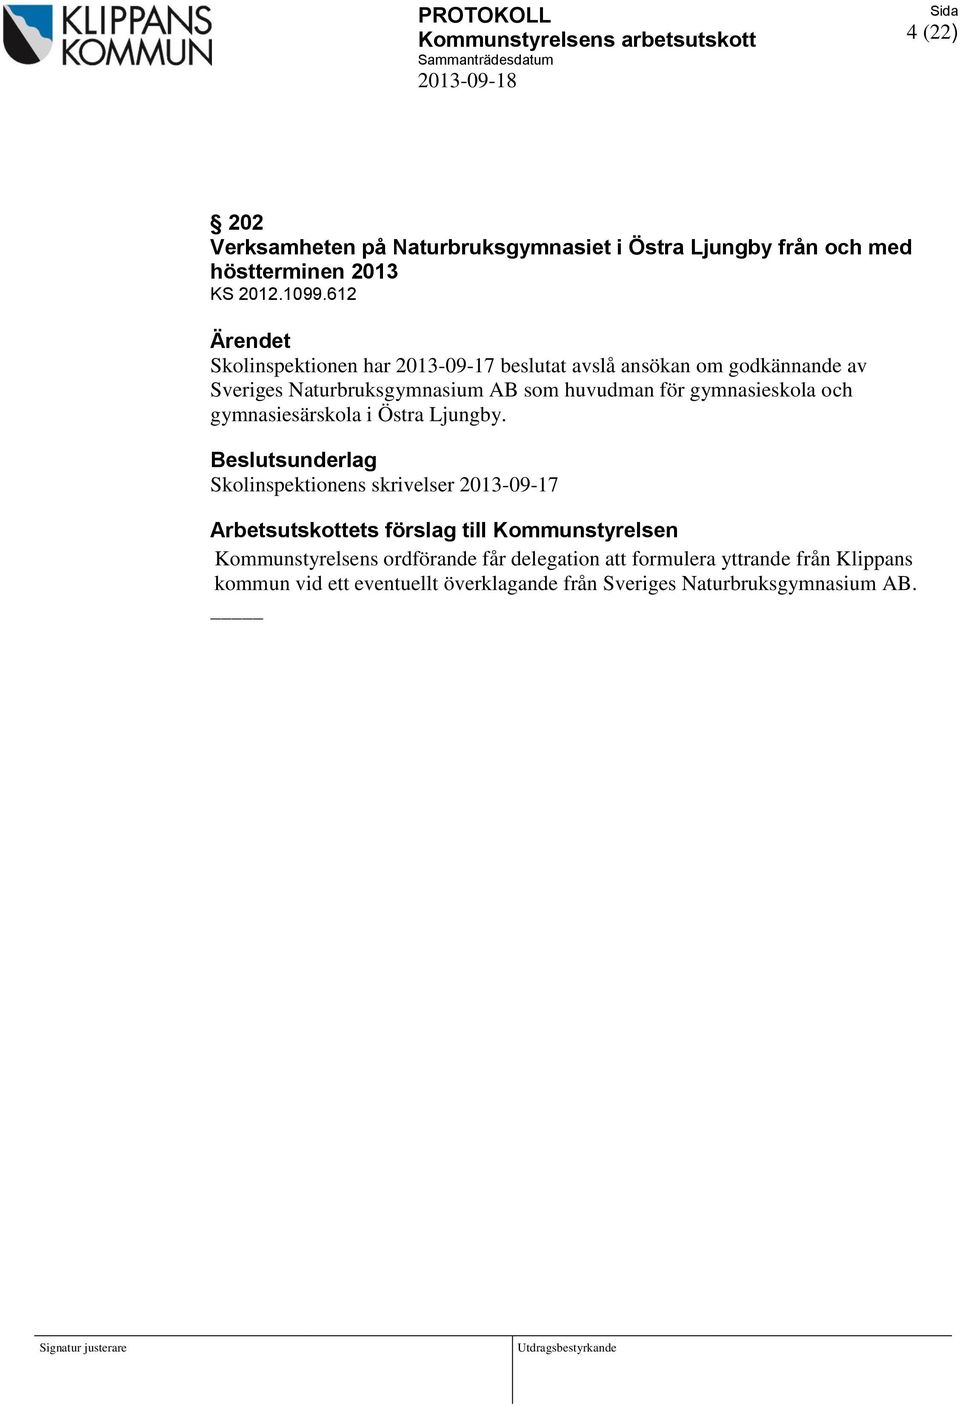 612 Ärendet Skolinspektionen har 2013-09-17 beslutat avslå ansökan om godkännande av Sveriges Naturbruksgymnasium AB som huvudman för gymnasieskola och